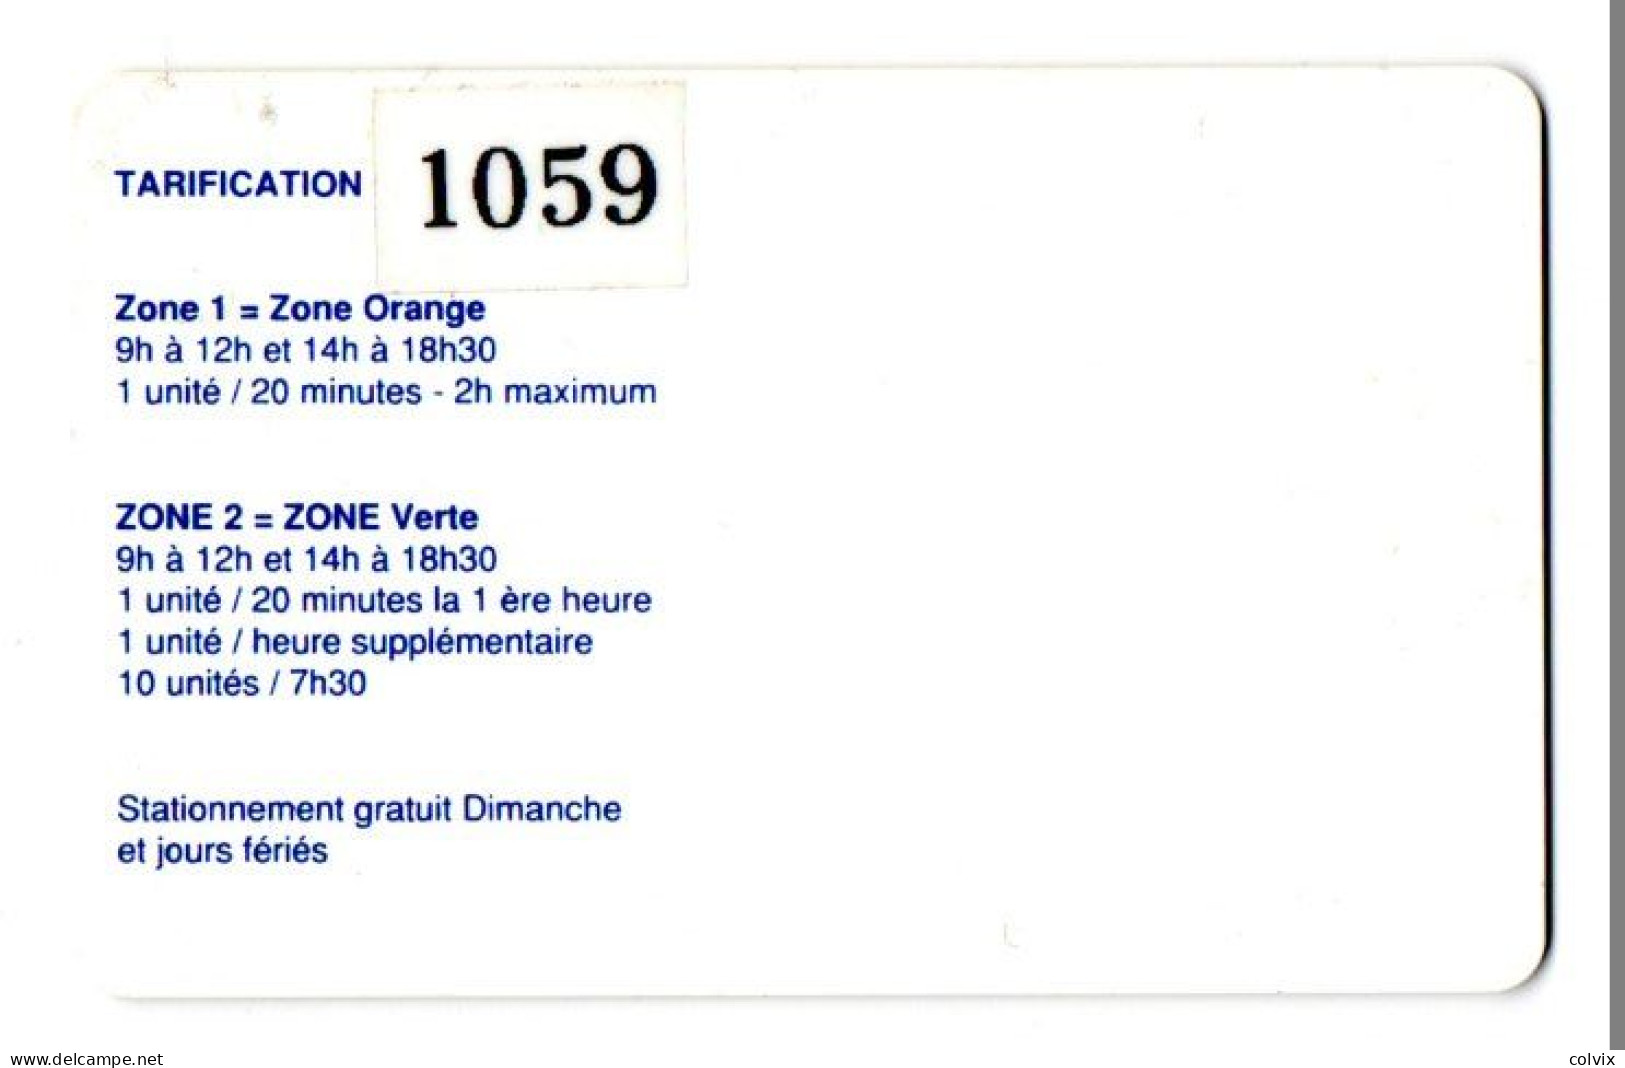 PIAF ROCHEFORT - Ref PIAF 17300-3 200U Date 07/94 1000 Ex LA FAYETTE Avec Autocollant Au Verso - Cartes De Stationnement, PIAF